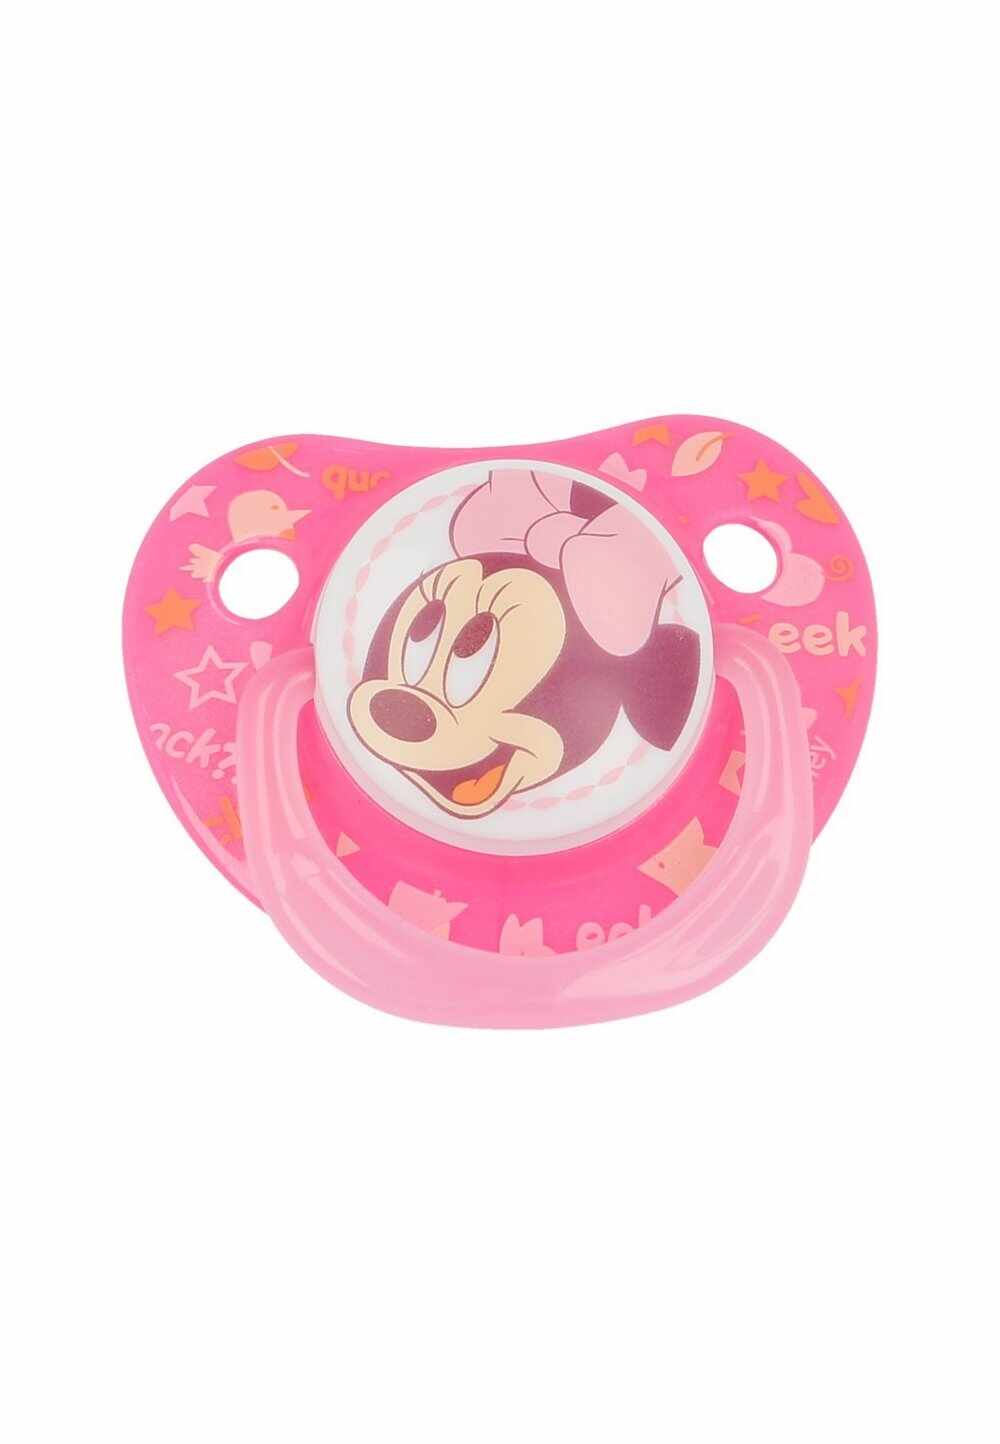 Suzeta cu tetina din silicon, roz, Minnie Mouse, 0-6 luni